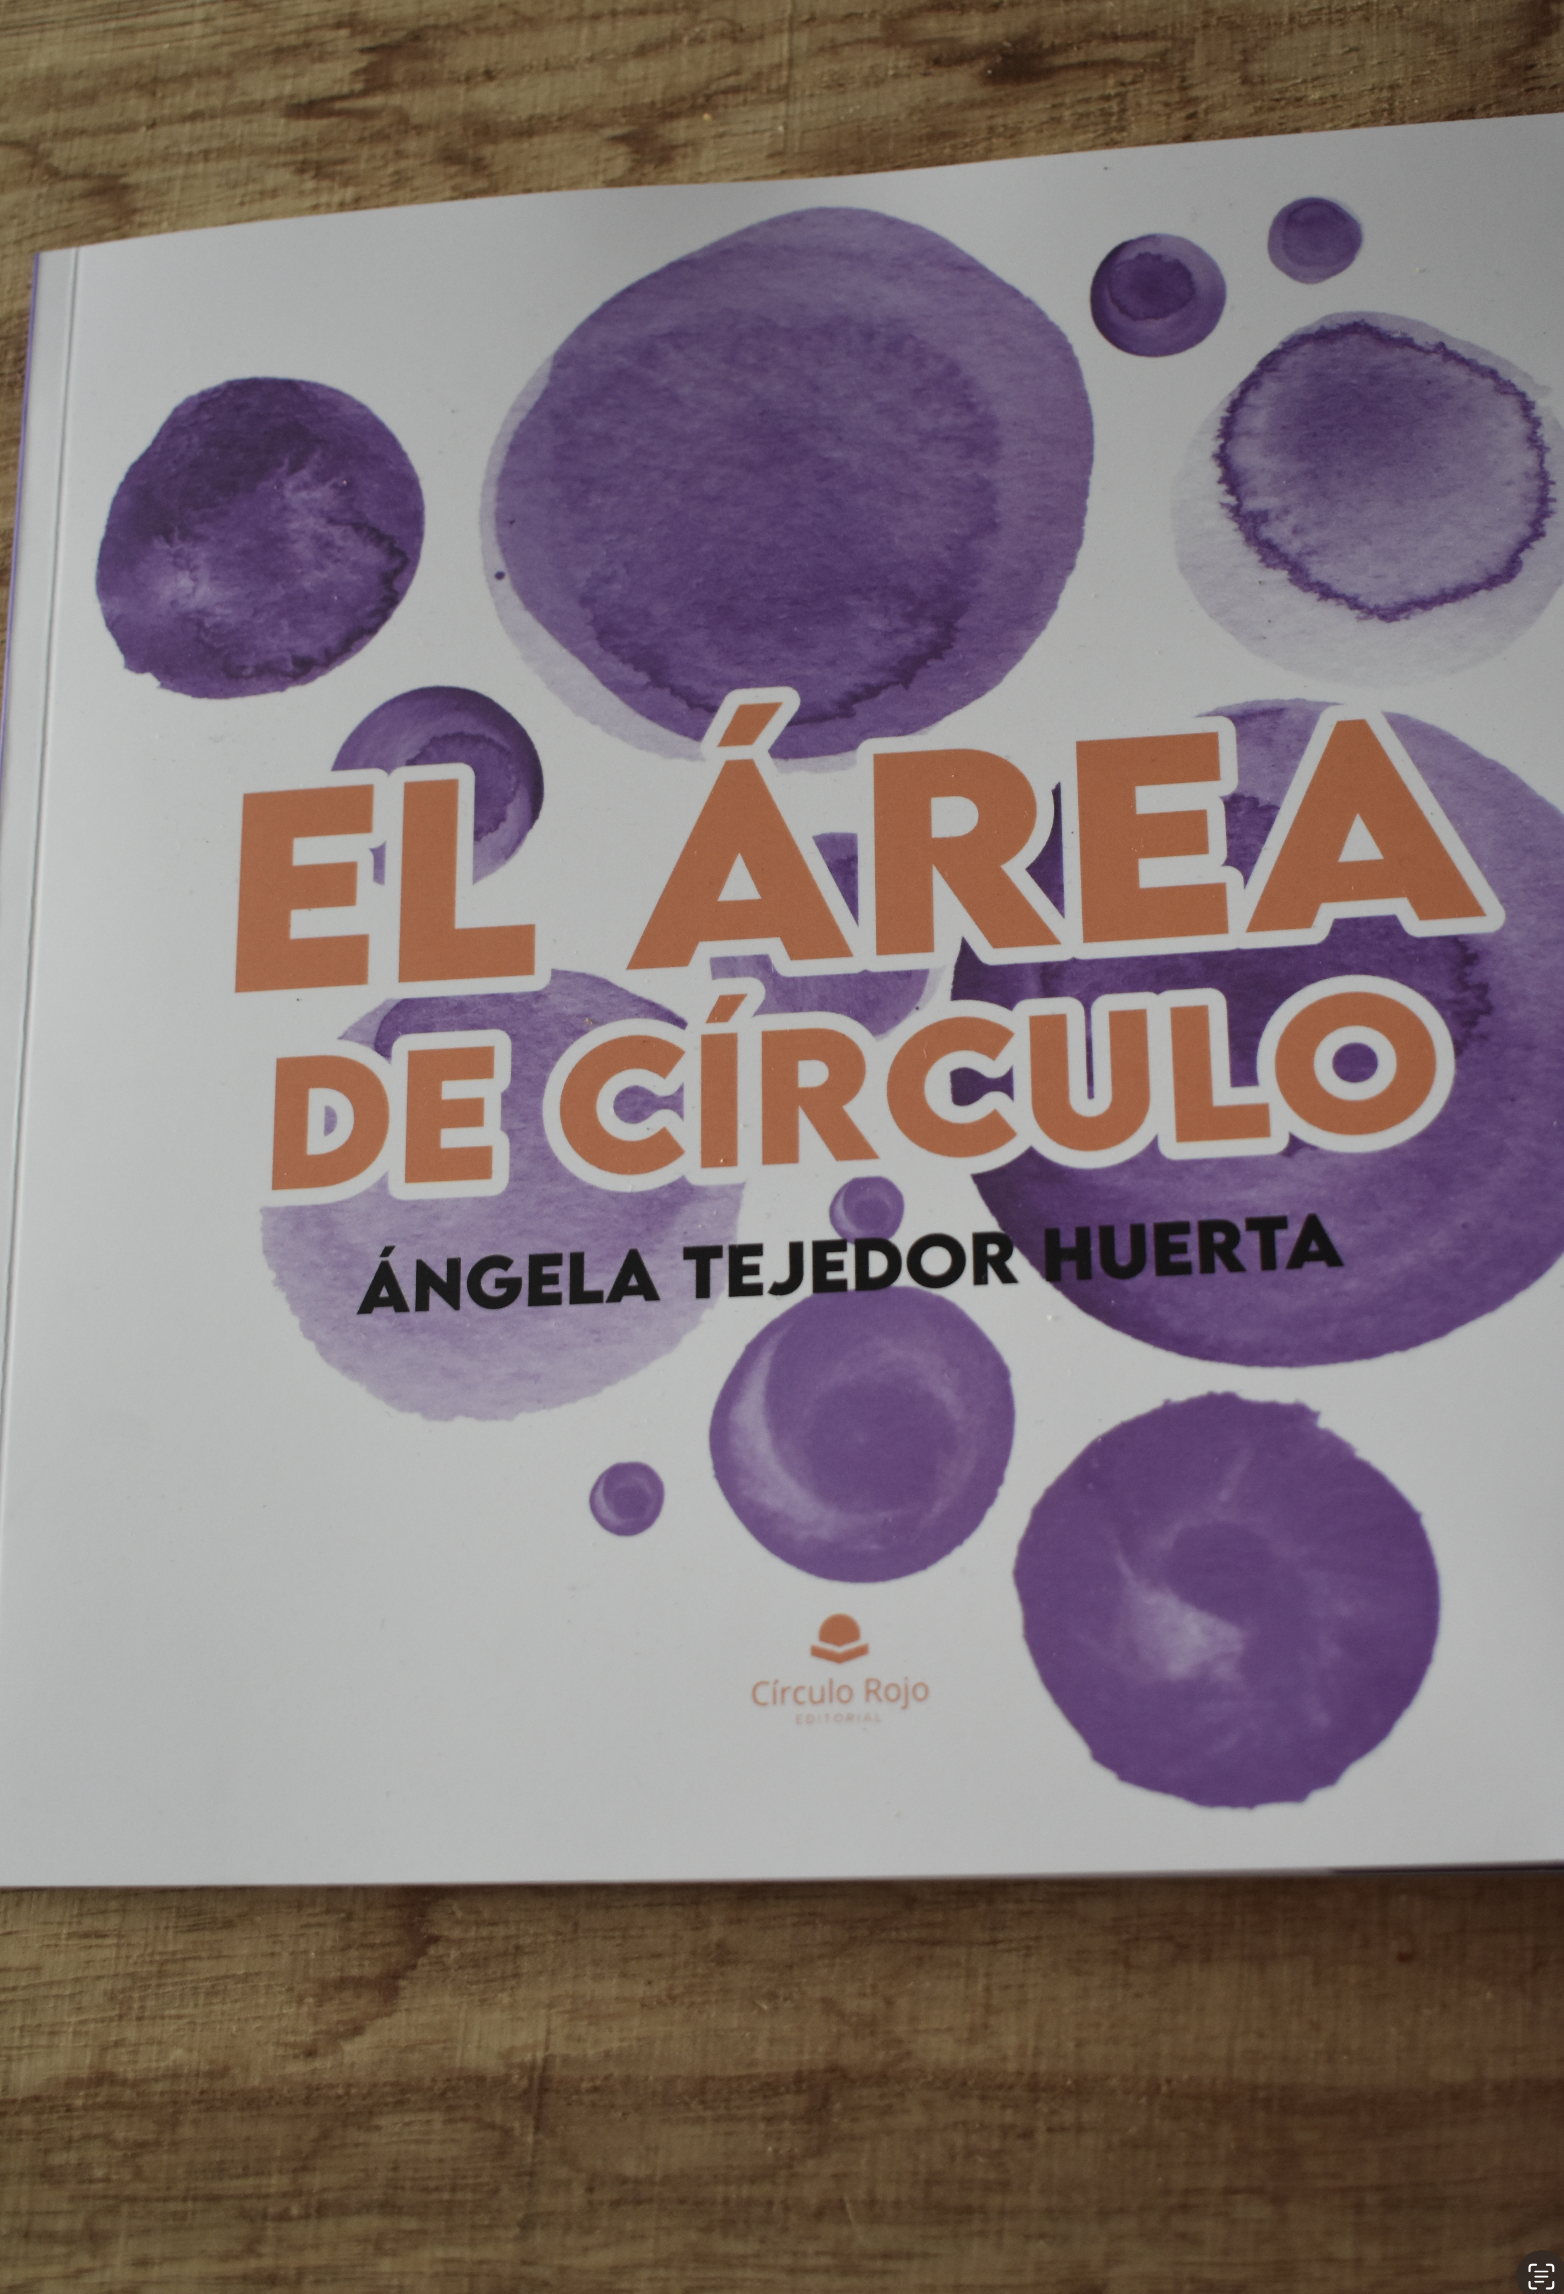 La escritora Ángela Tejedor Huerta, nos cuenta todo sobre su obra “El Área de Círculo”.